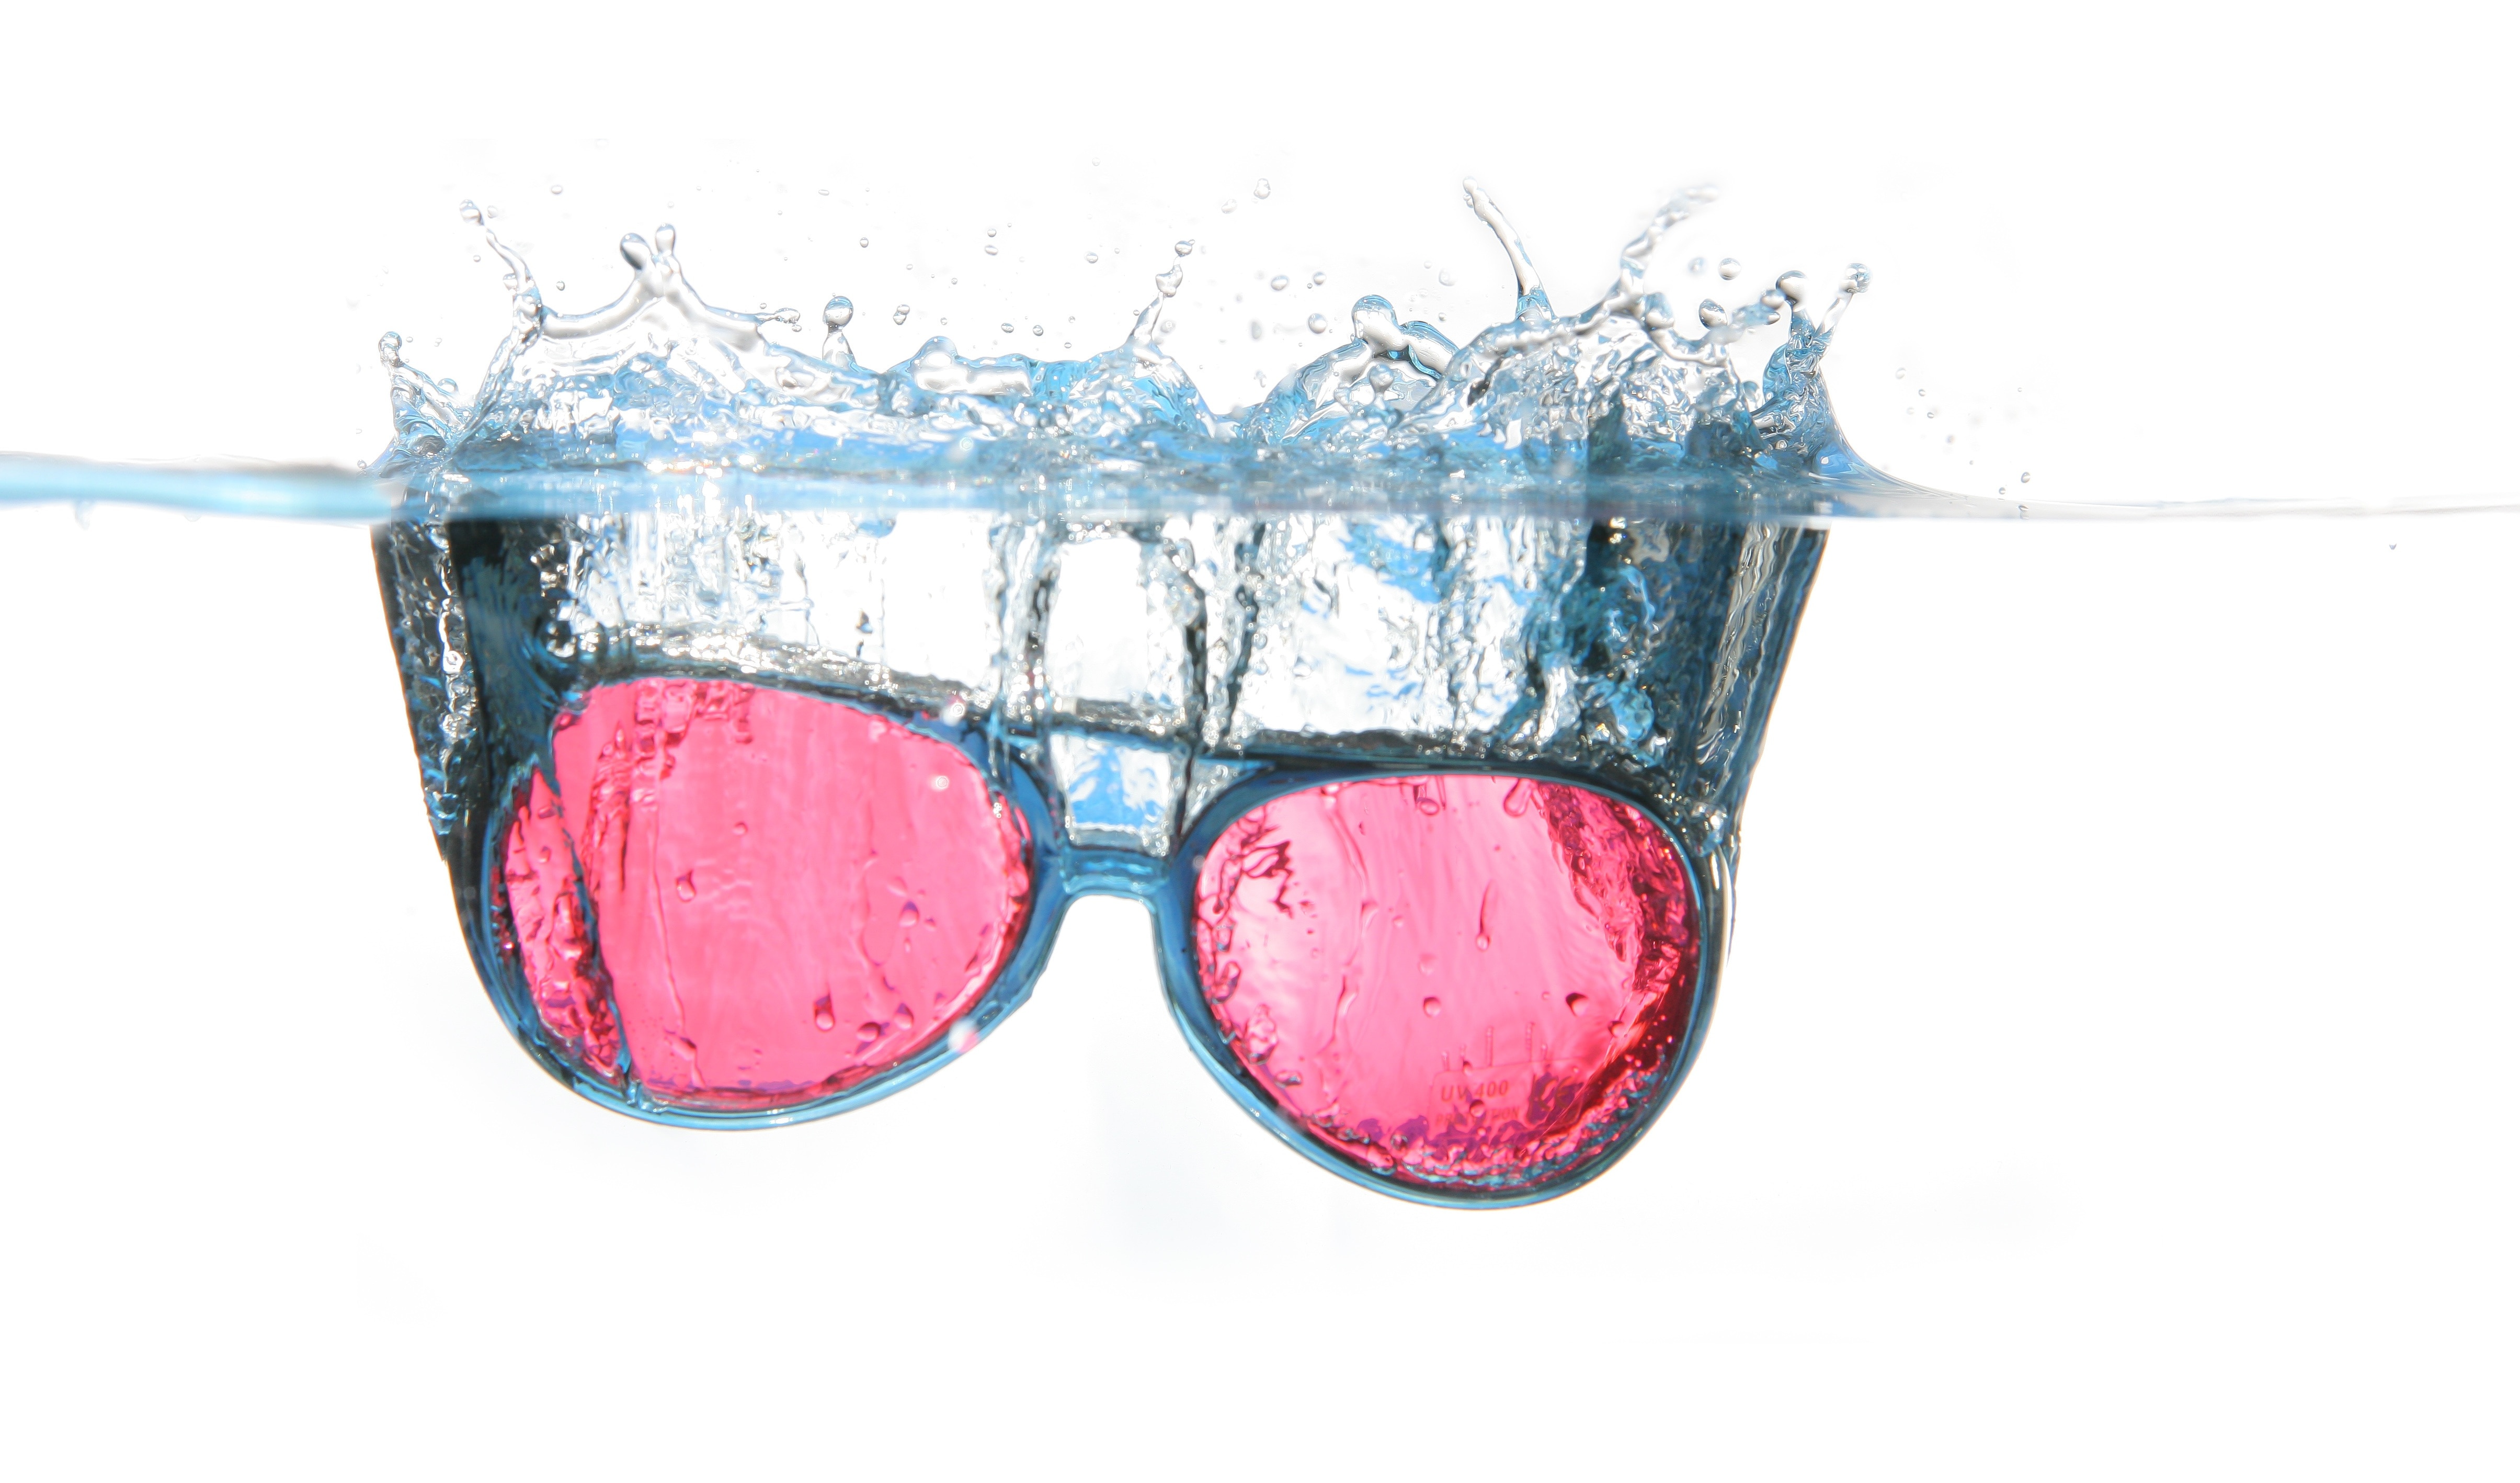 red lens black framed sunglasses on water